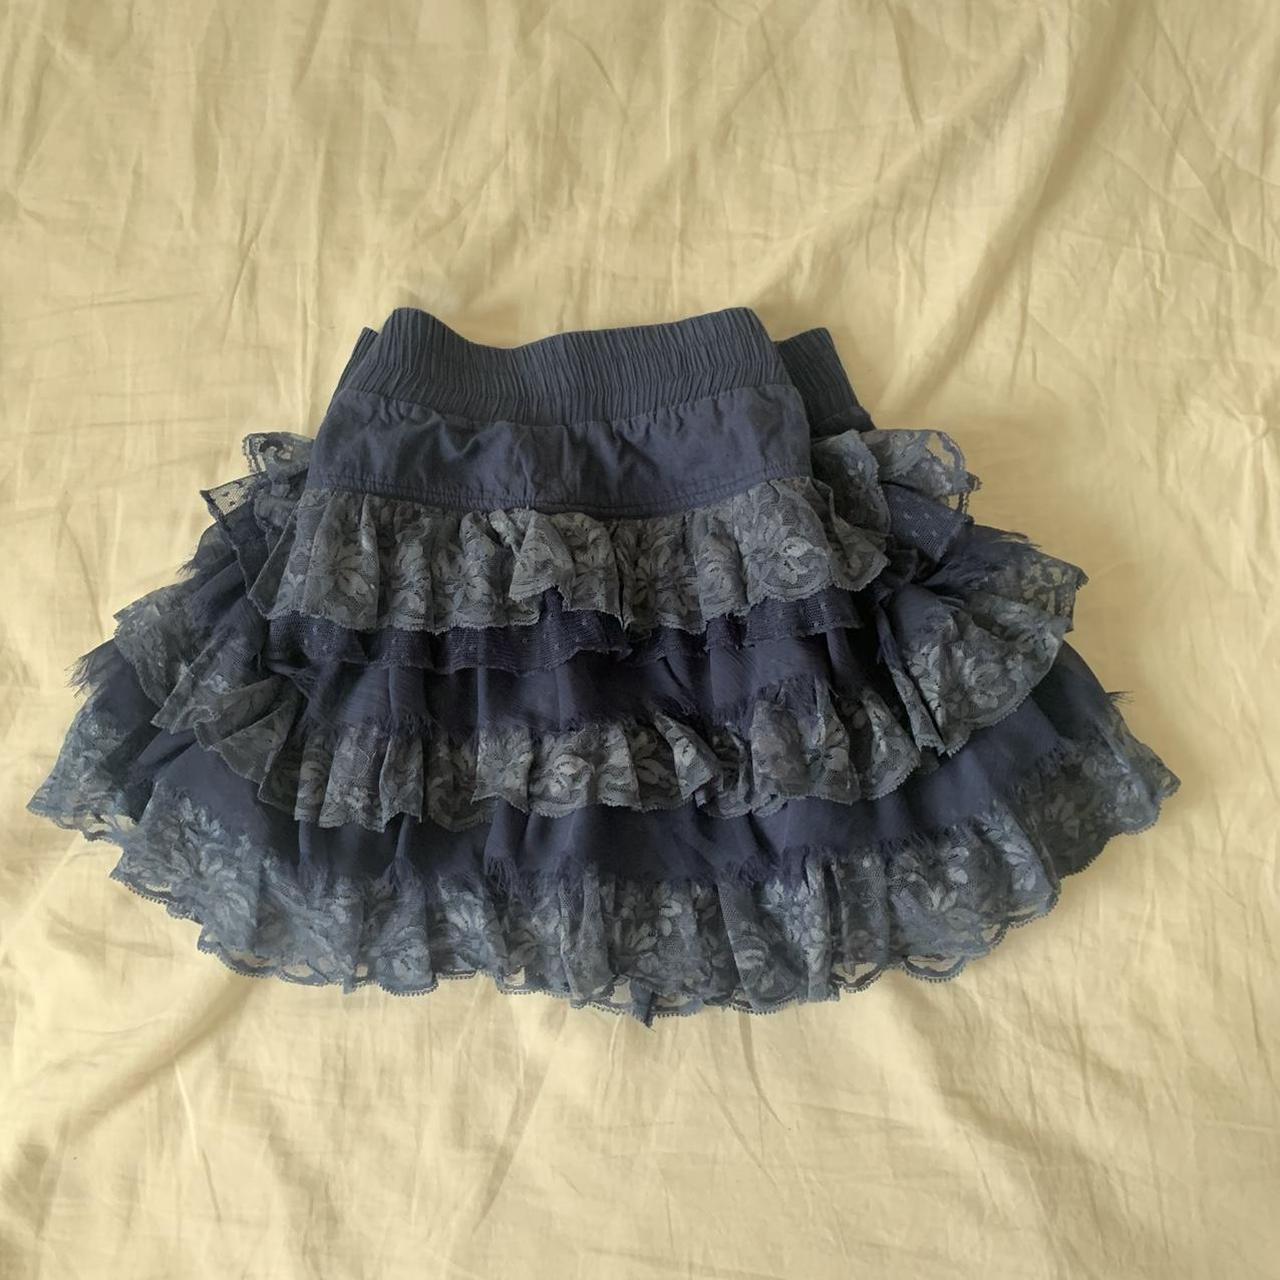 cutest little rara skirt,, wld recommend for size 10... - Depop